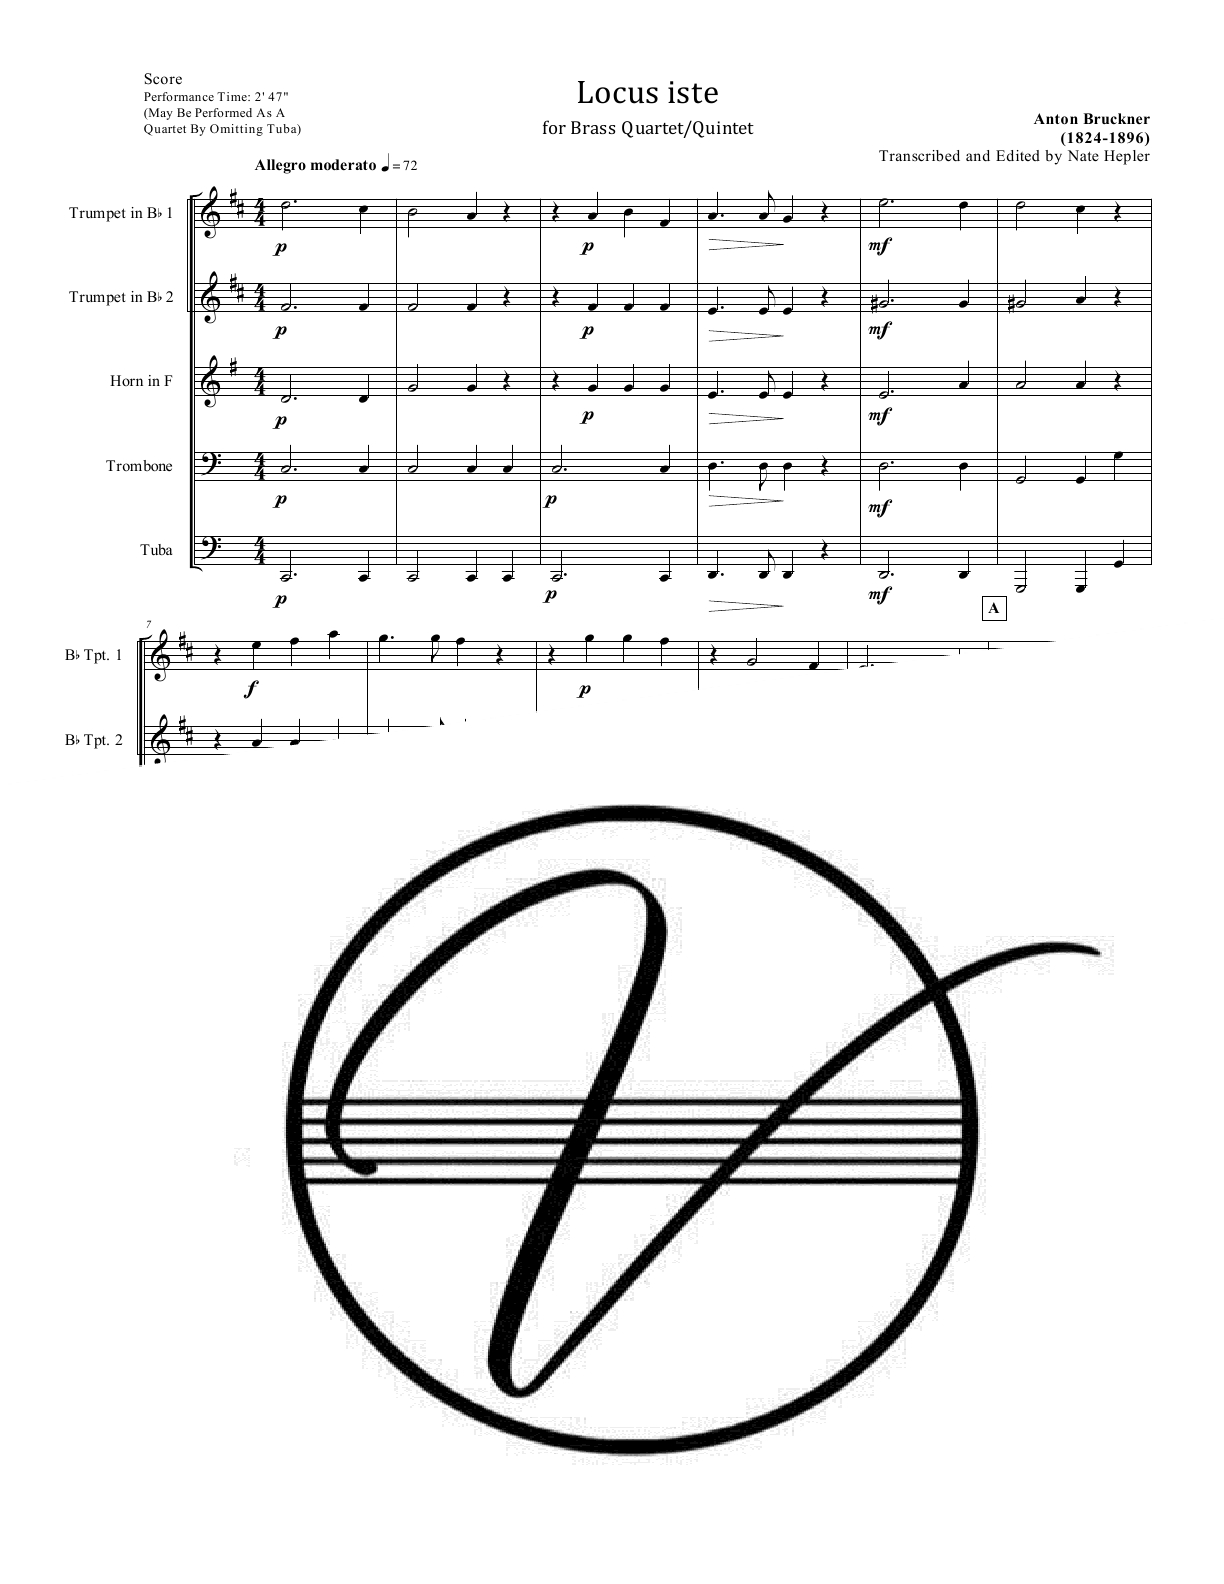 Bruckner - Locus iste (Motet) (Brass Quartet/Quintet)